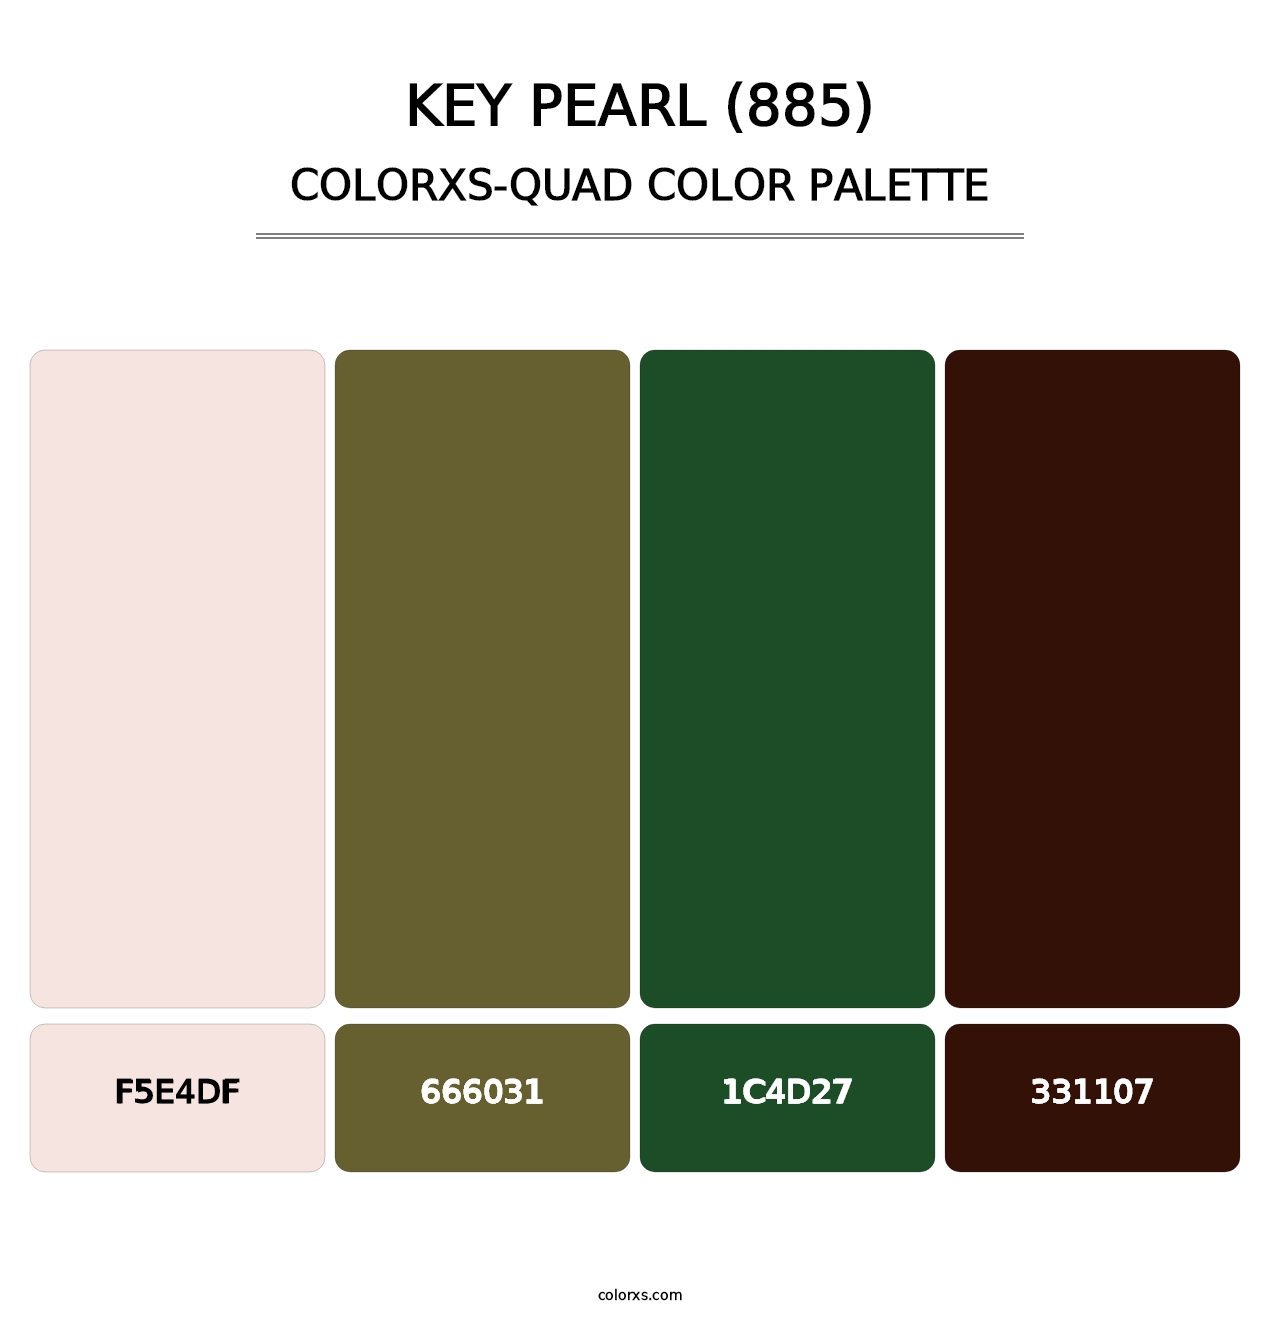 Key Pearl (885) - Colorxs Quad Palette